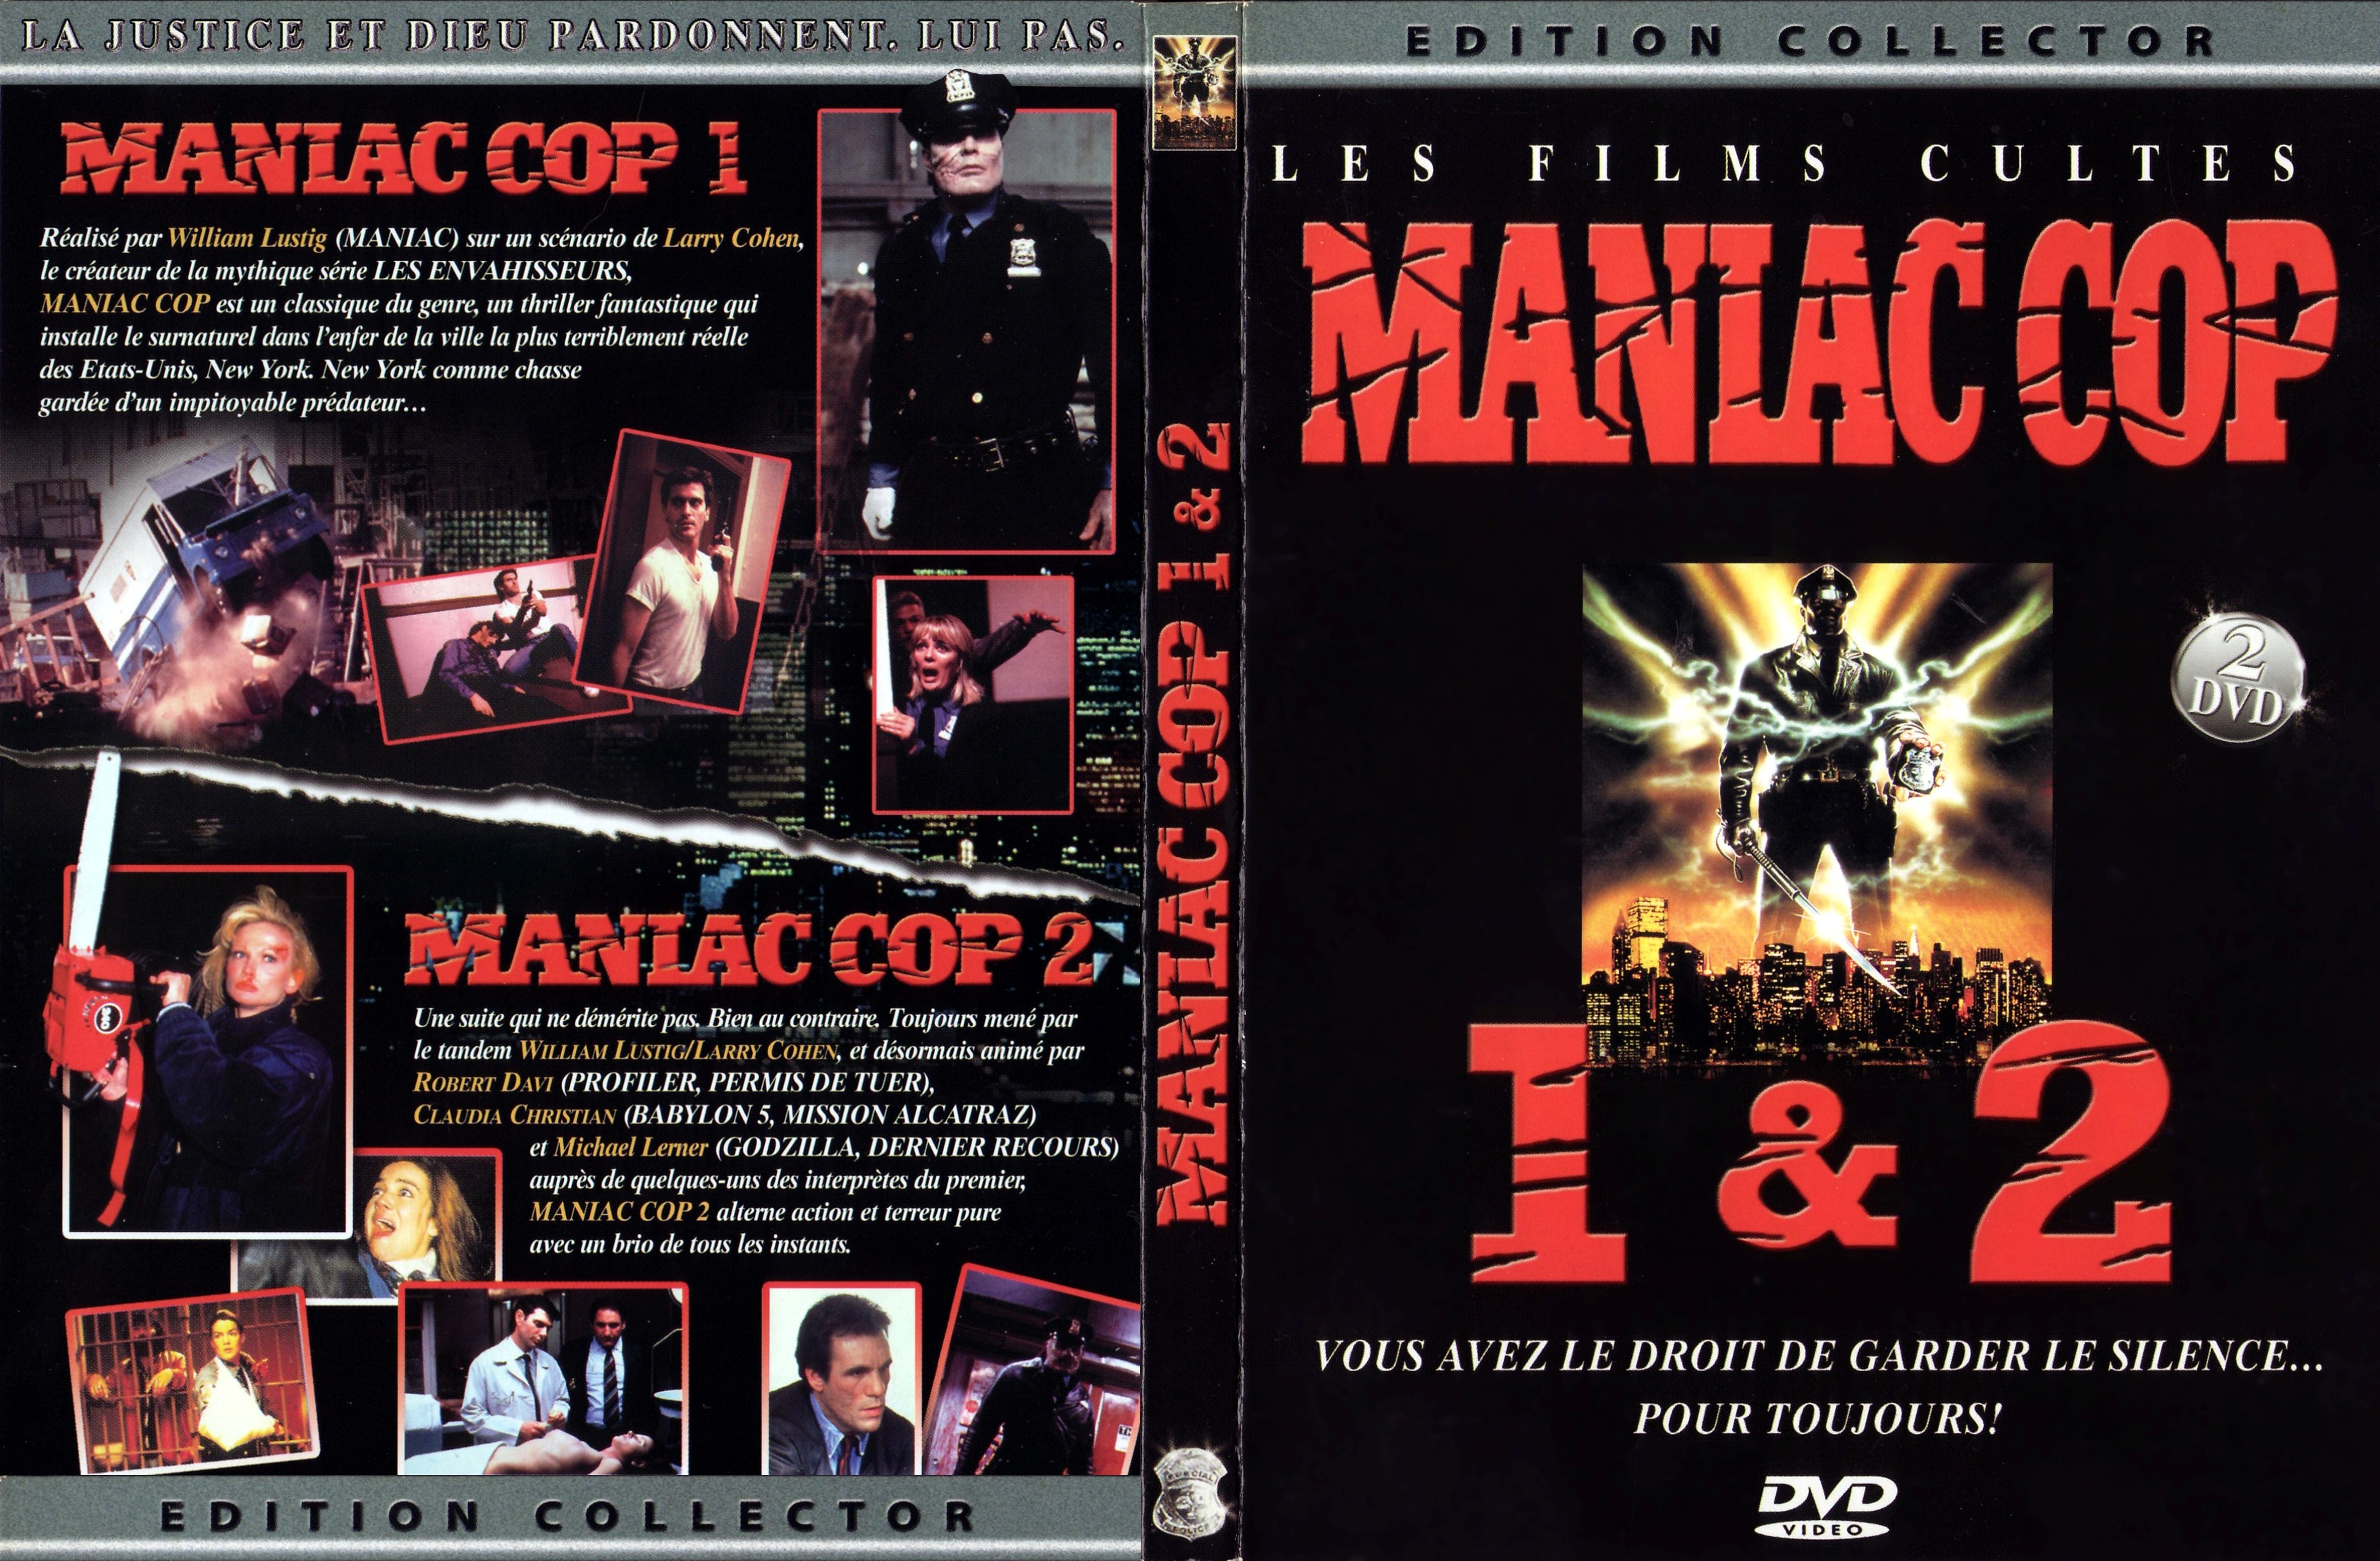 Jaquette DVD Maniac cop 1 et 2 v4